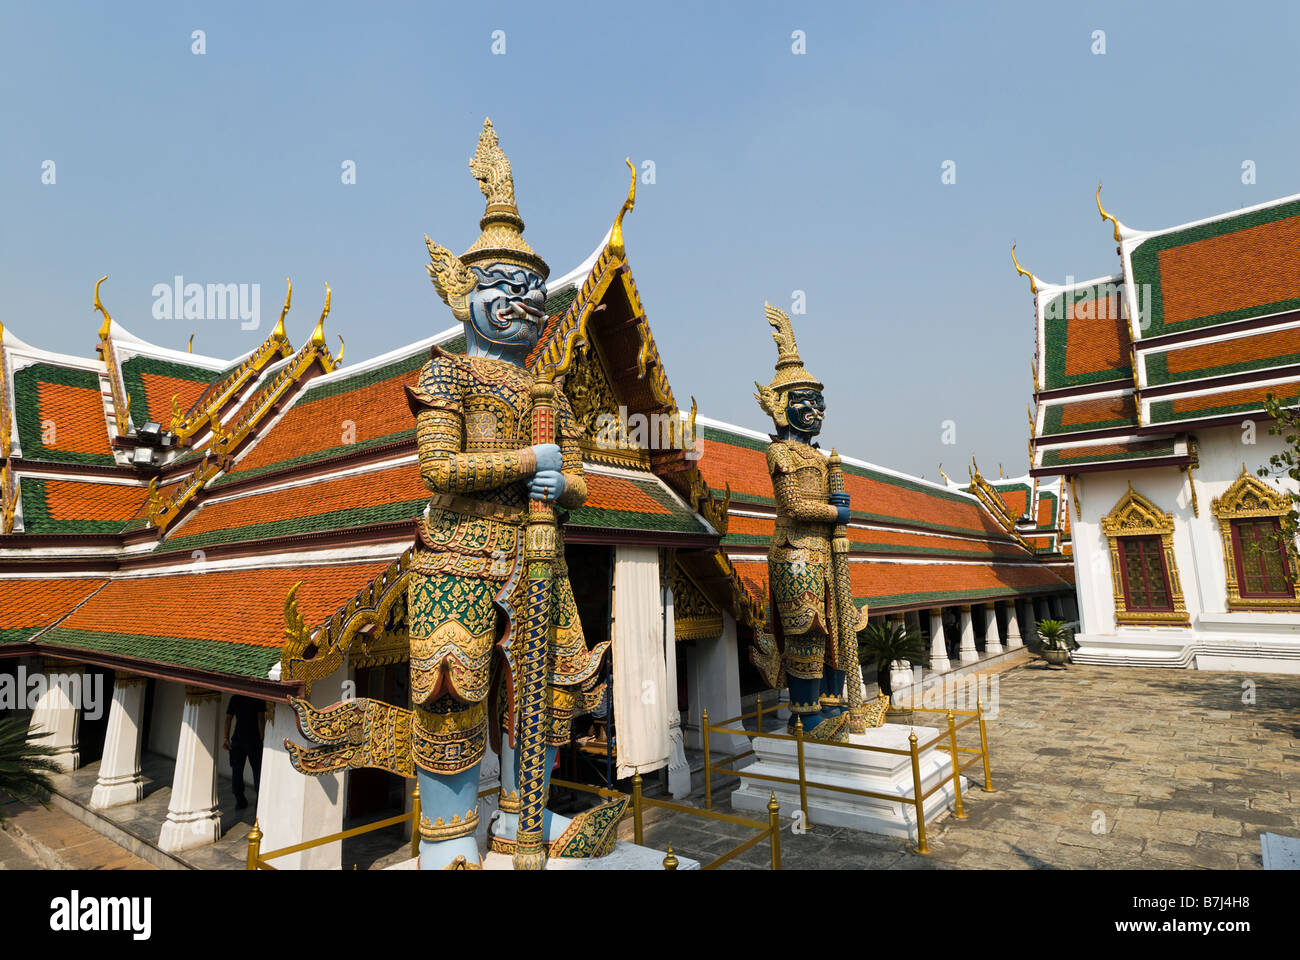 Thotkhirithon riesige Dämonen bewachen einen Ausgang - Wat Phra Kaew und dem Grand Palace in Bangkok Zentralthailand Stockfoto